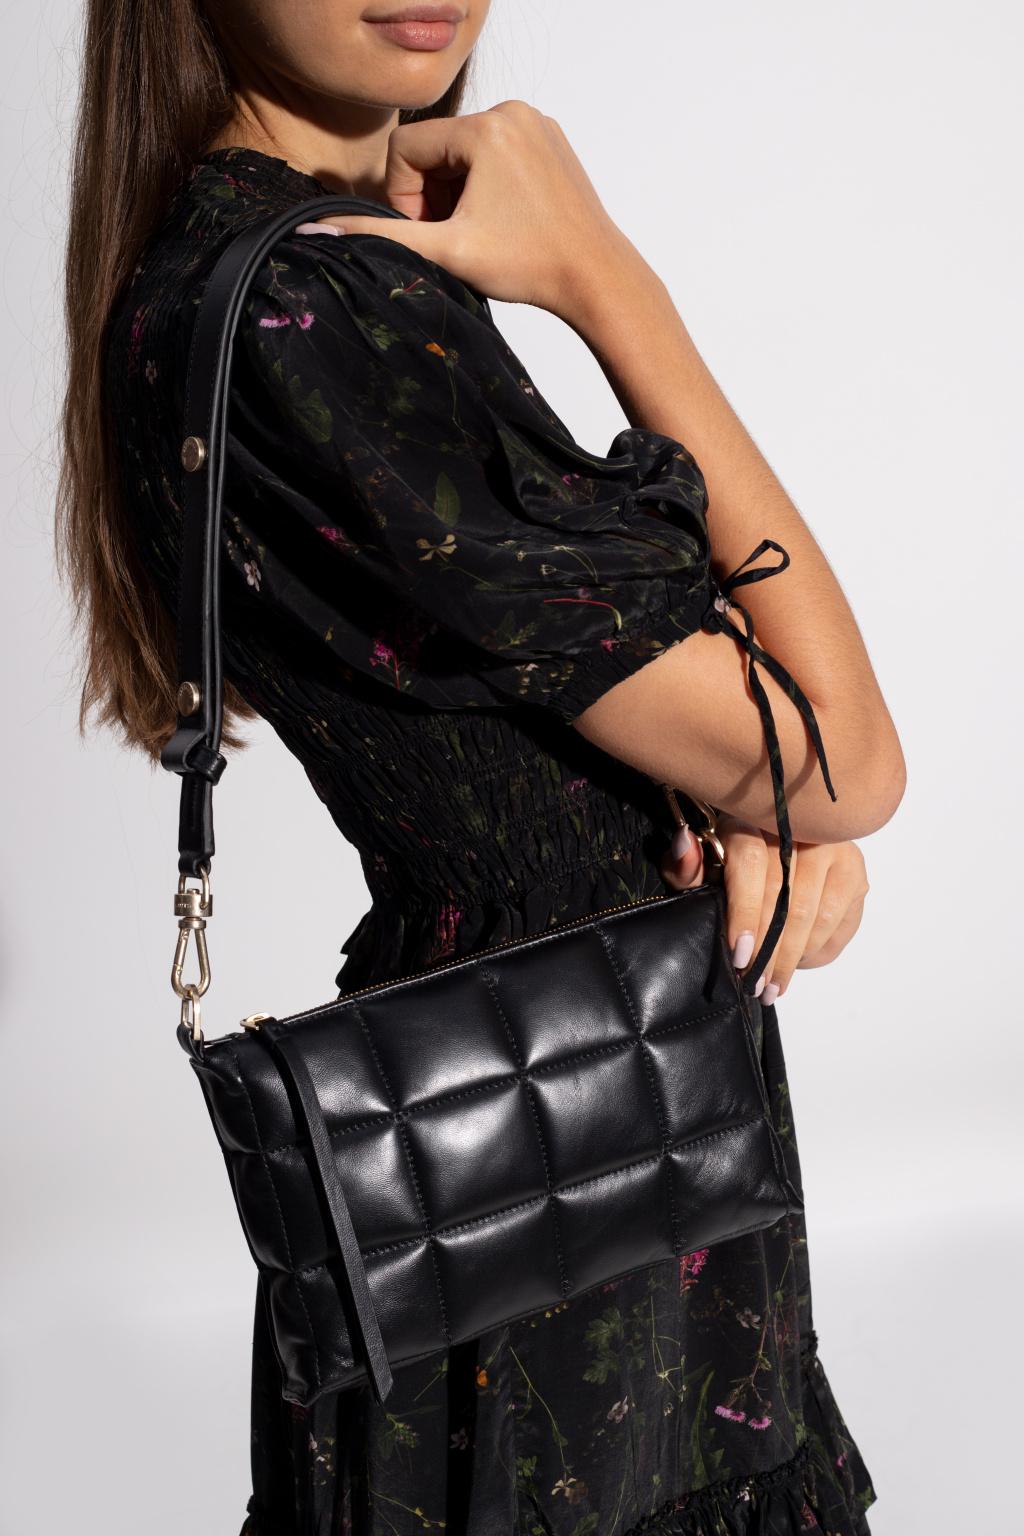 AllSaints 'eve' Quilted Shoulder Bag in Black